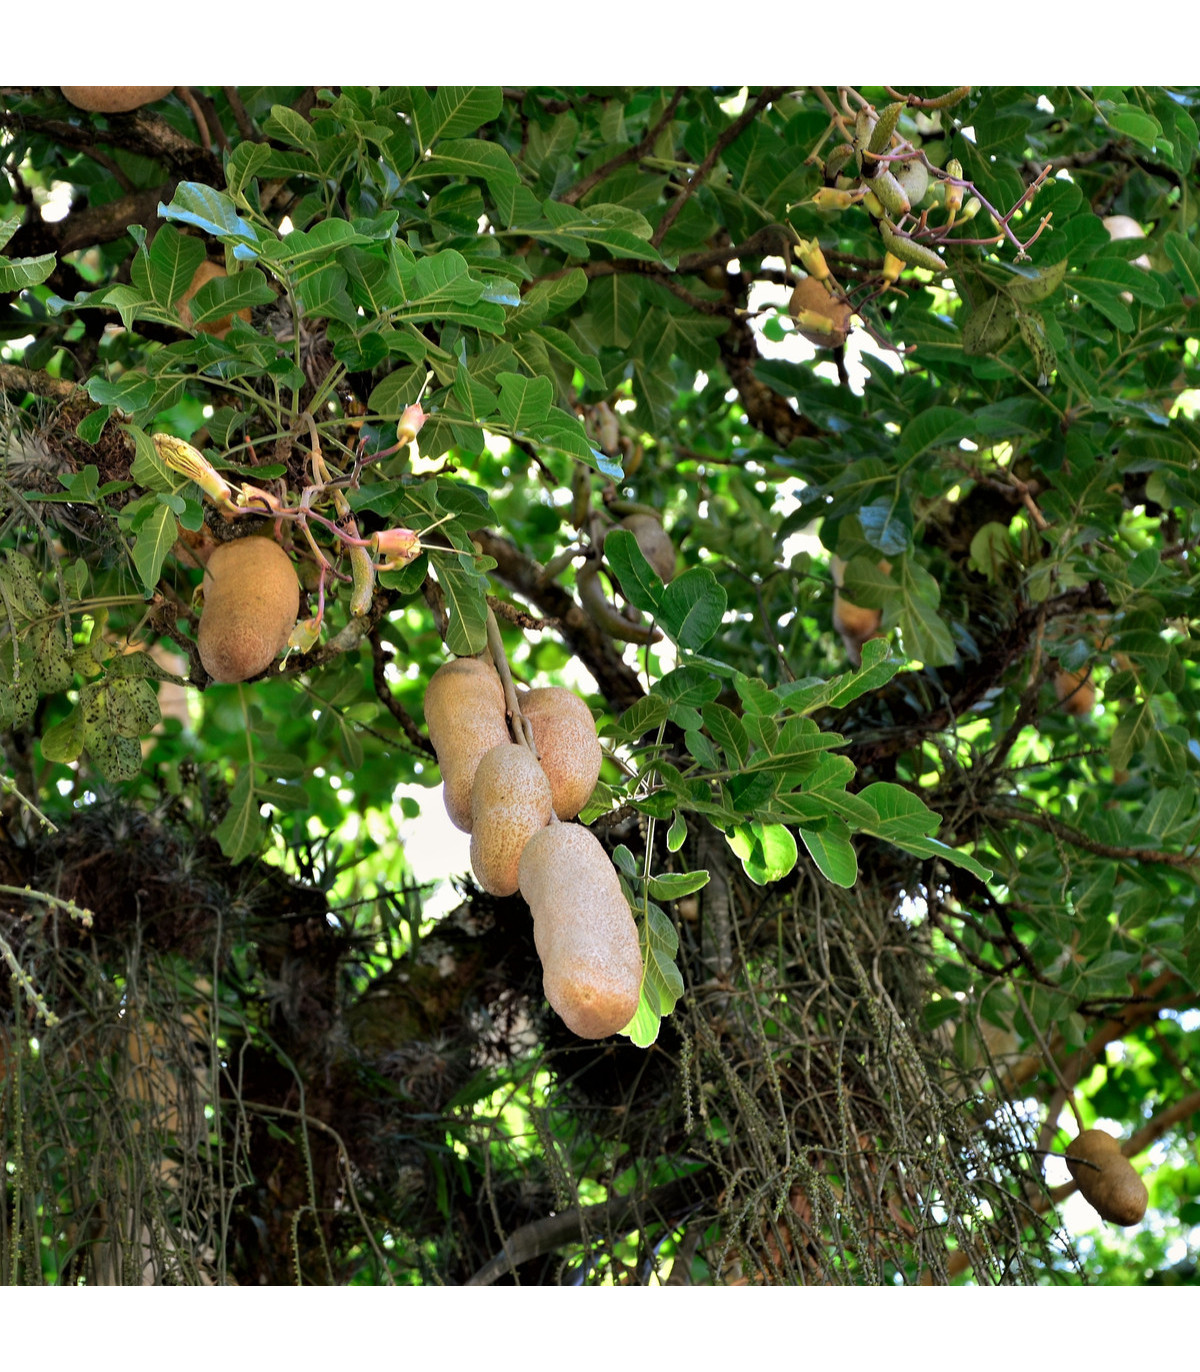 Kigélie - Salámový strom - Kigelia africana - osivo kigélie - 4 ks